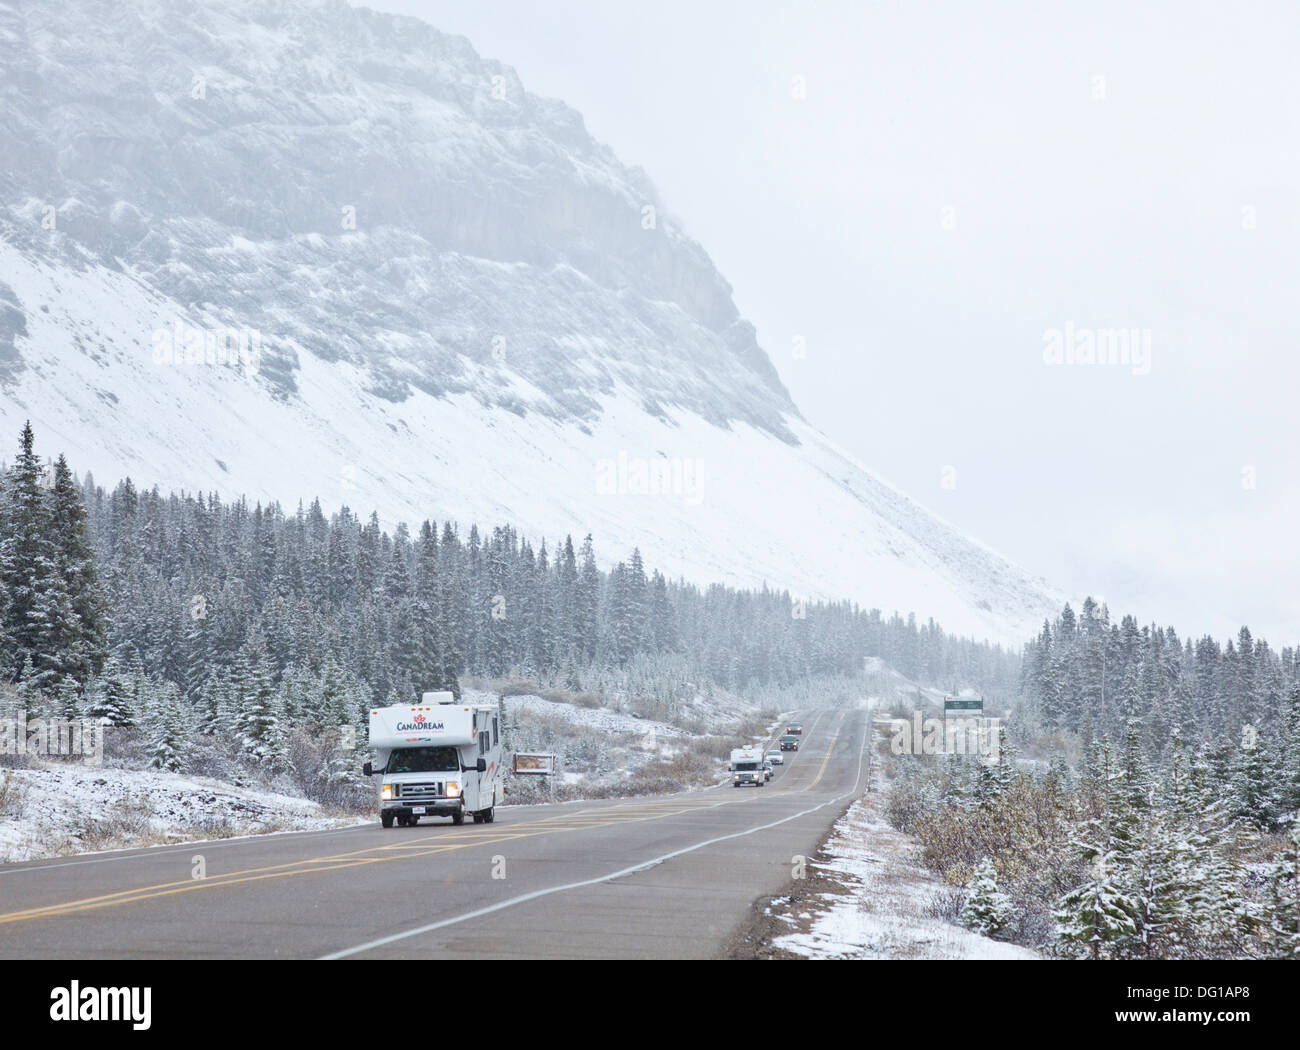 La circulation sur la Promenade des glaciers dans une tempête de neige, Parc National de Jasper Alberta Canada Amérique du Nord Banque D'Images